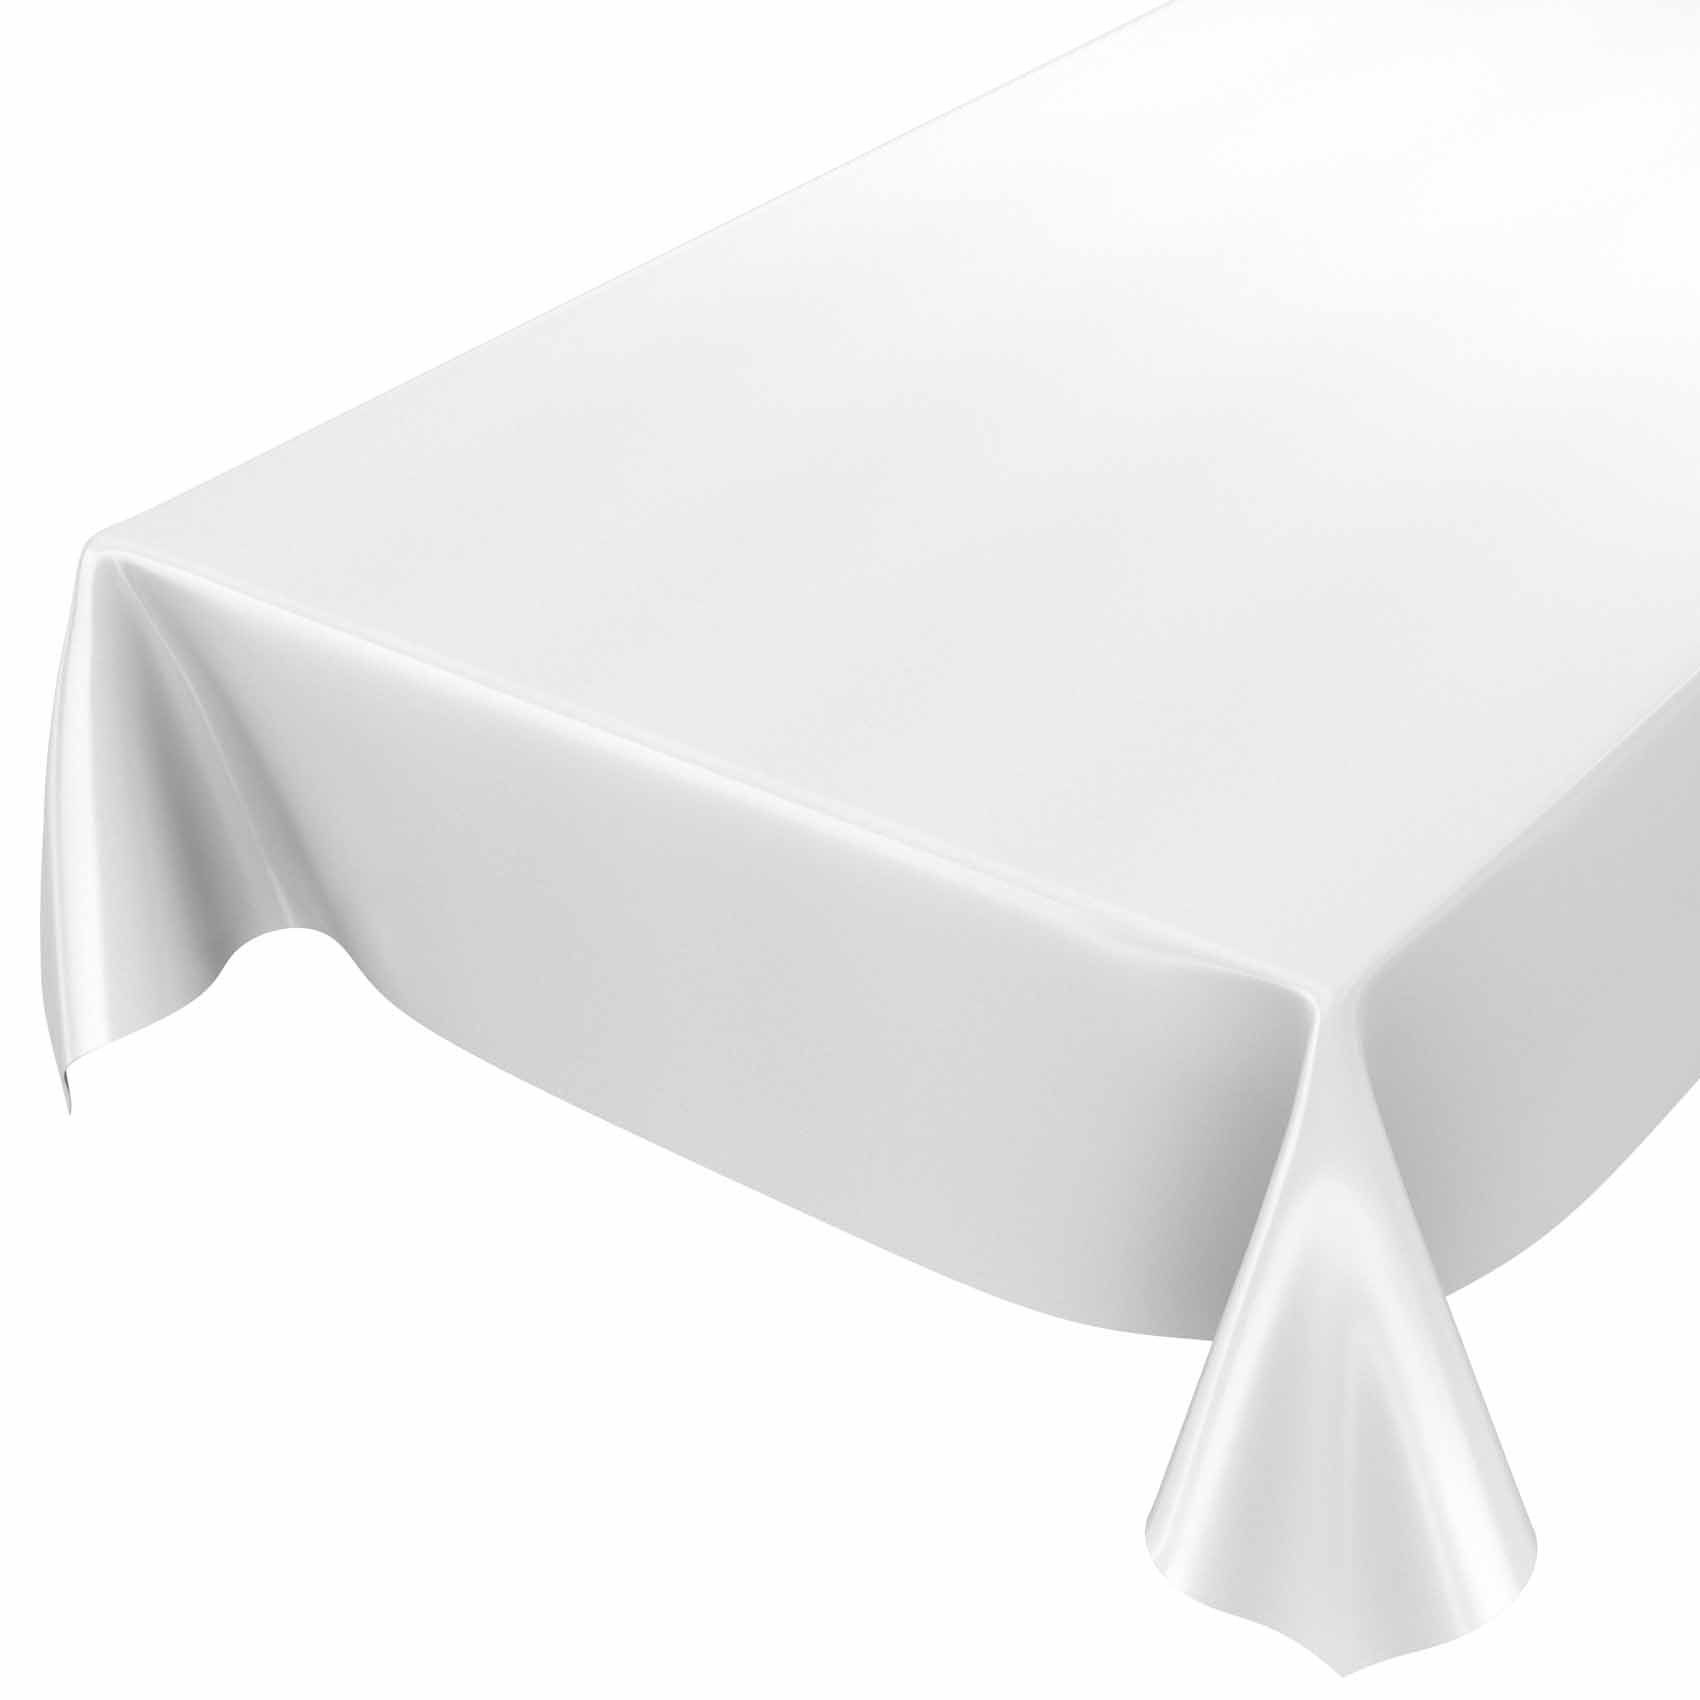 ANRO Tischdecke Tischdecke Wachstuch Glatt Breite Robust 140, Wasserabweisend Einfarbig Weiß